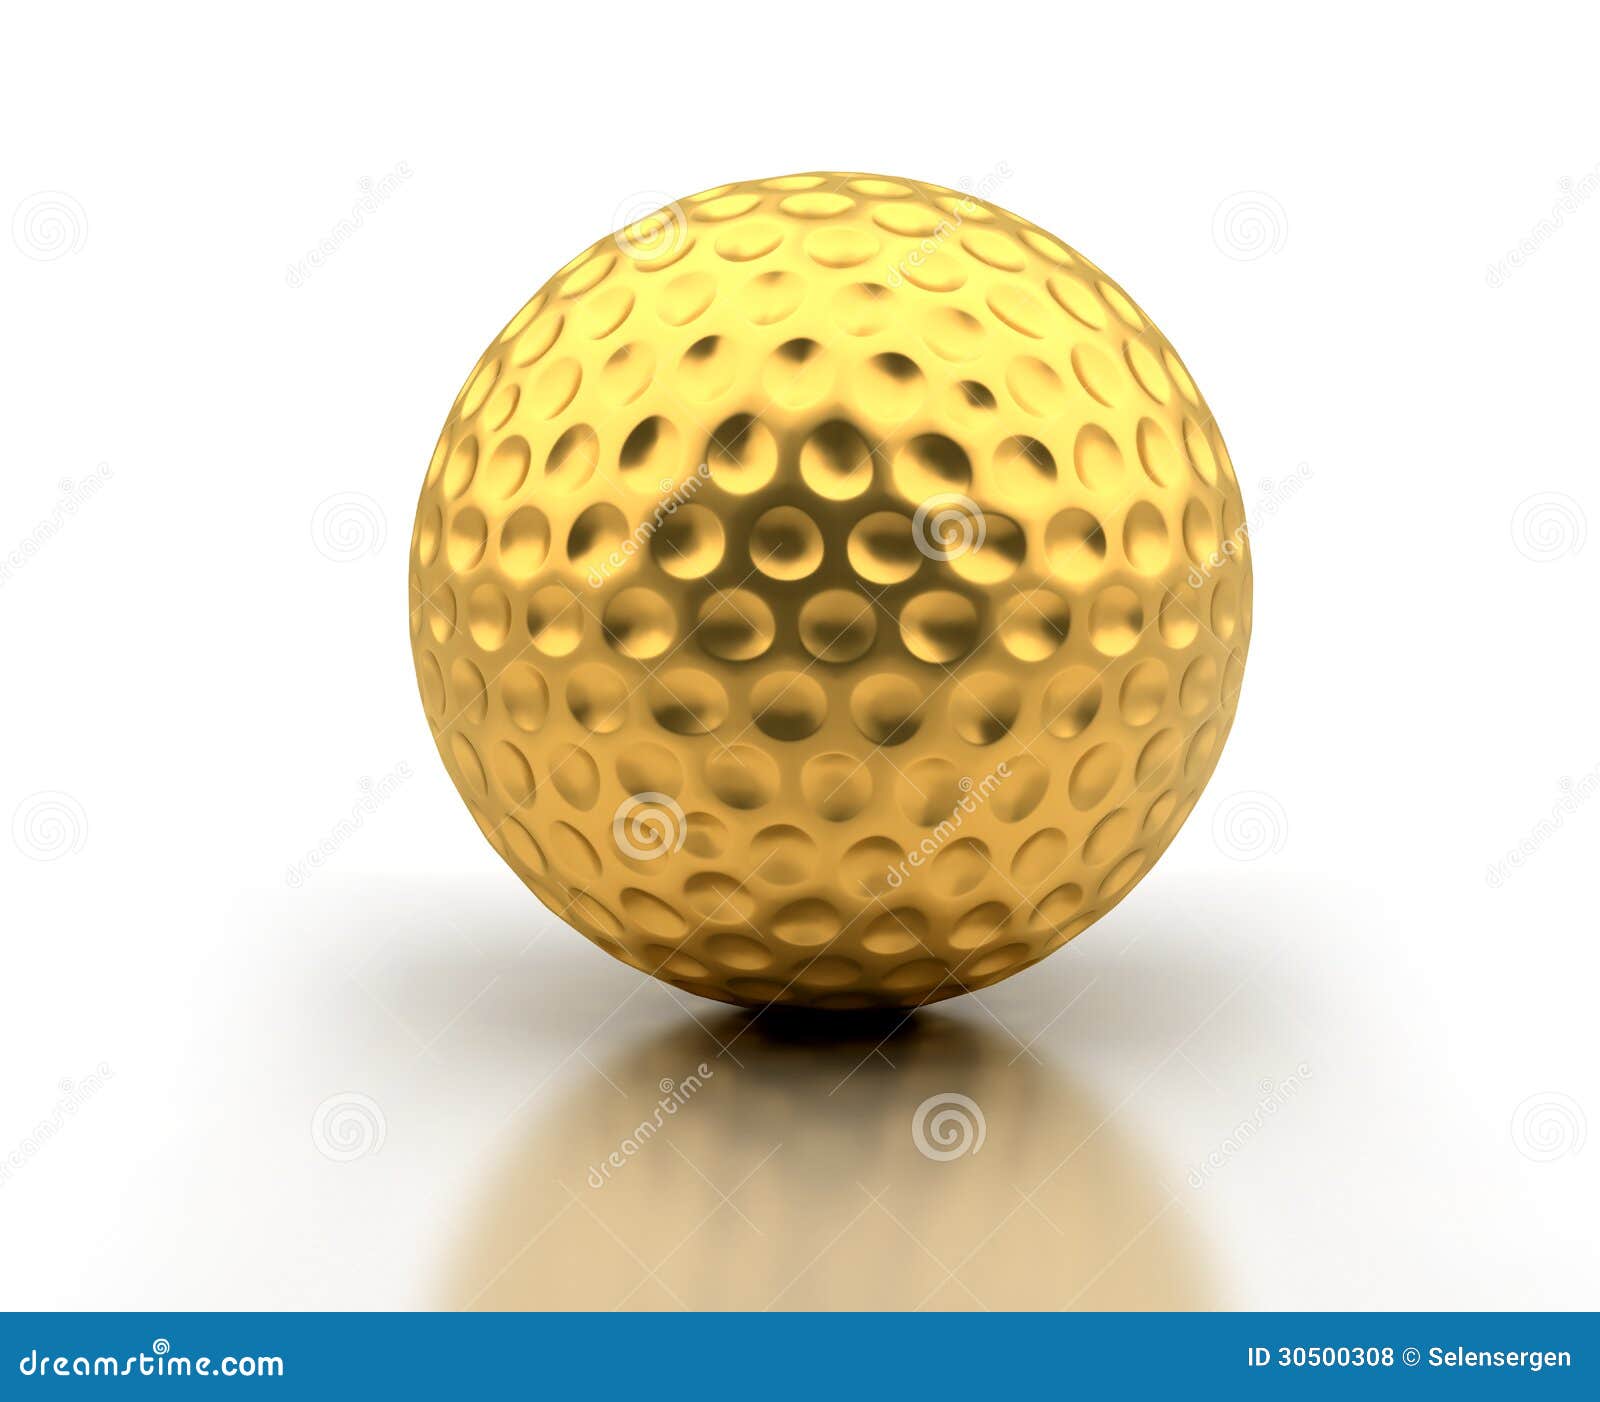 Golden Golf Ball stock illustration. Illustration of white - 30500308